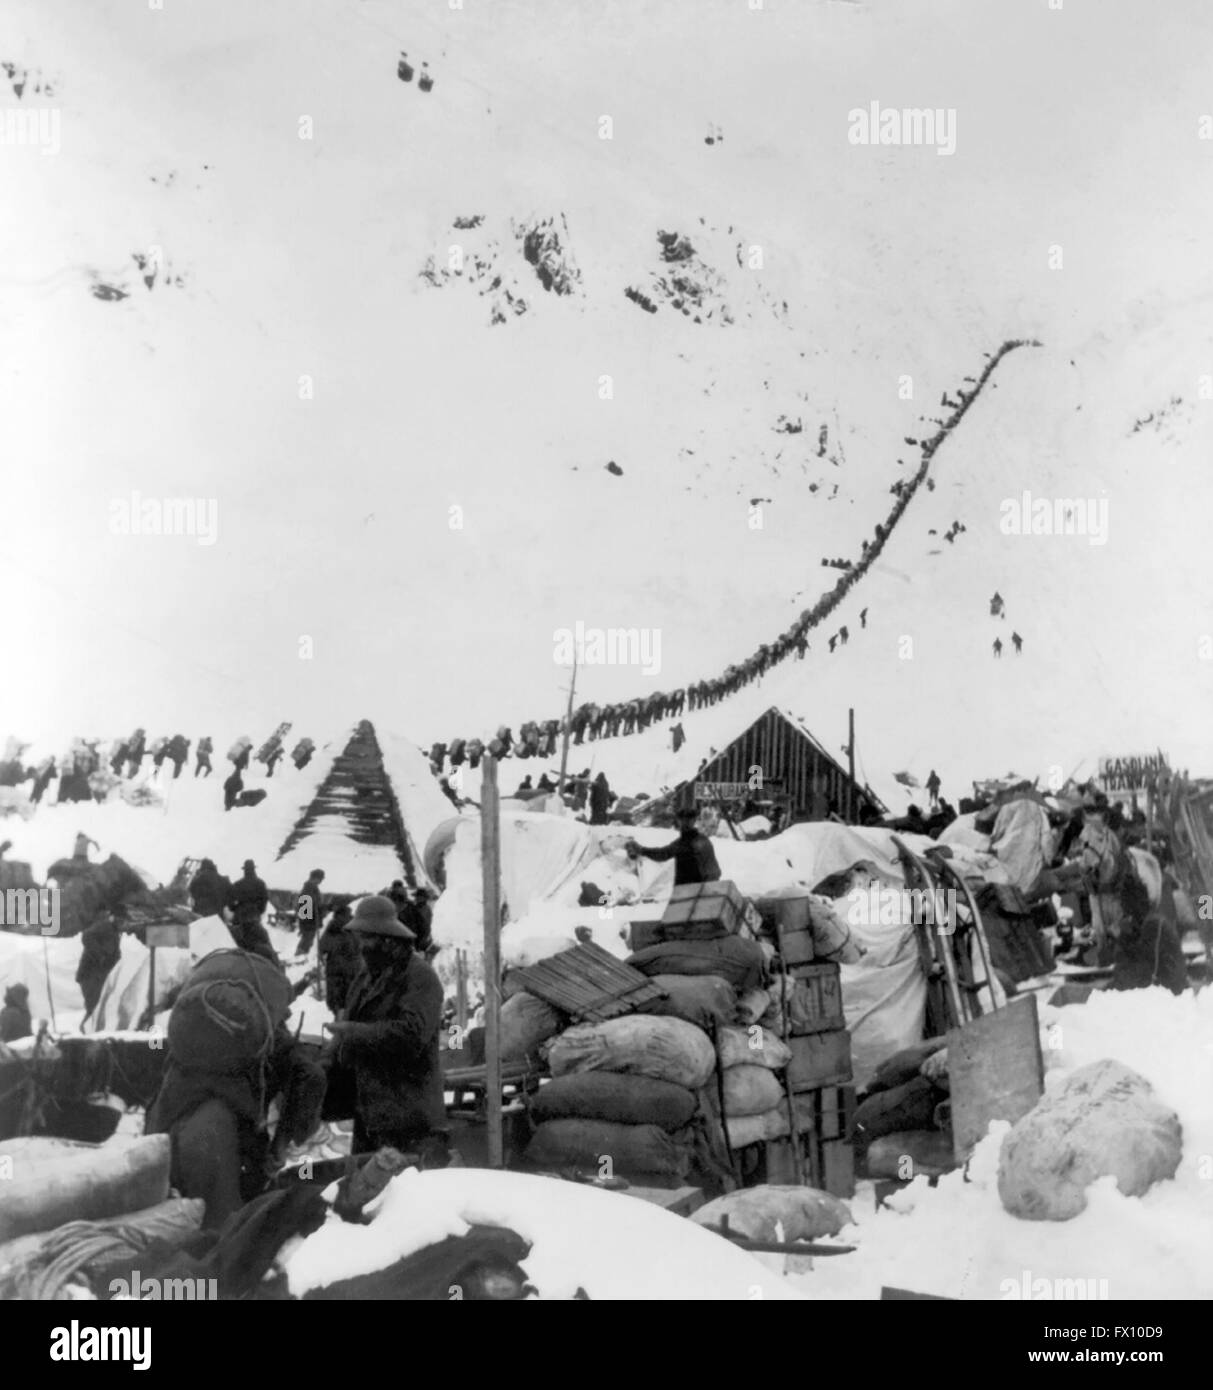 L'or du Klondike. Les prospecteurs en route pour les champs aurifères du Klondike via le col Chilkoot sur la frontière Canada/Alaska, c.1898. Banque D'Images